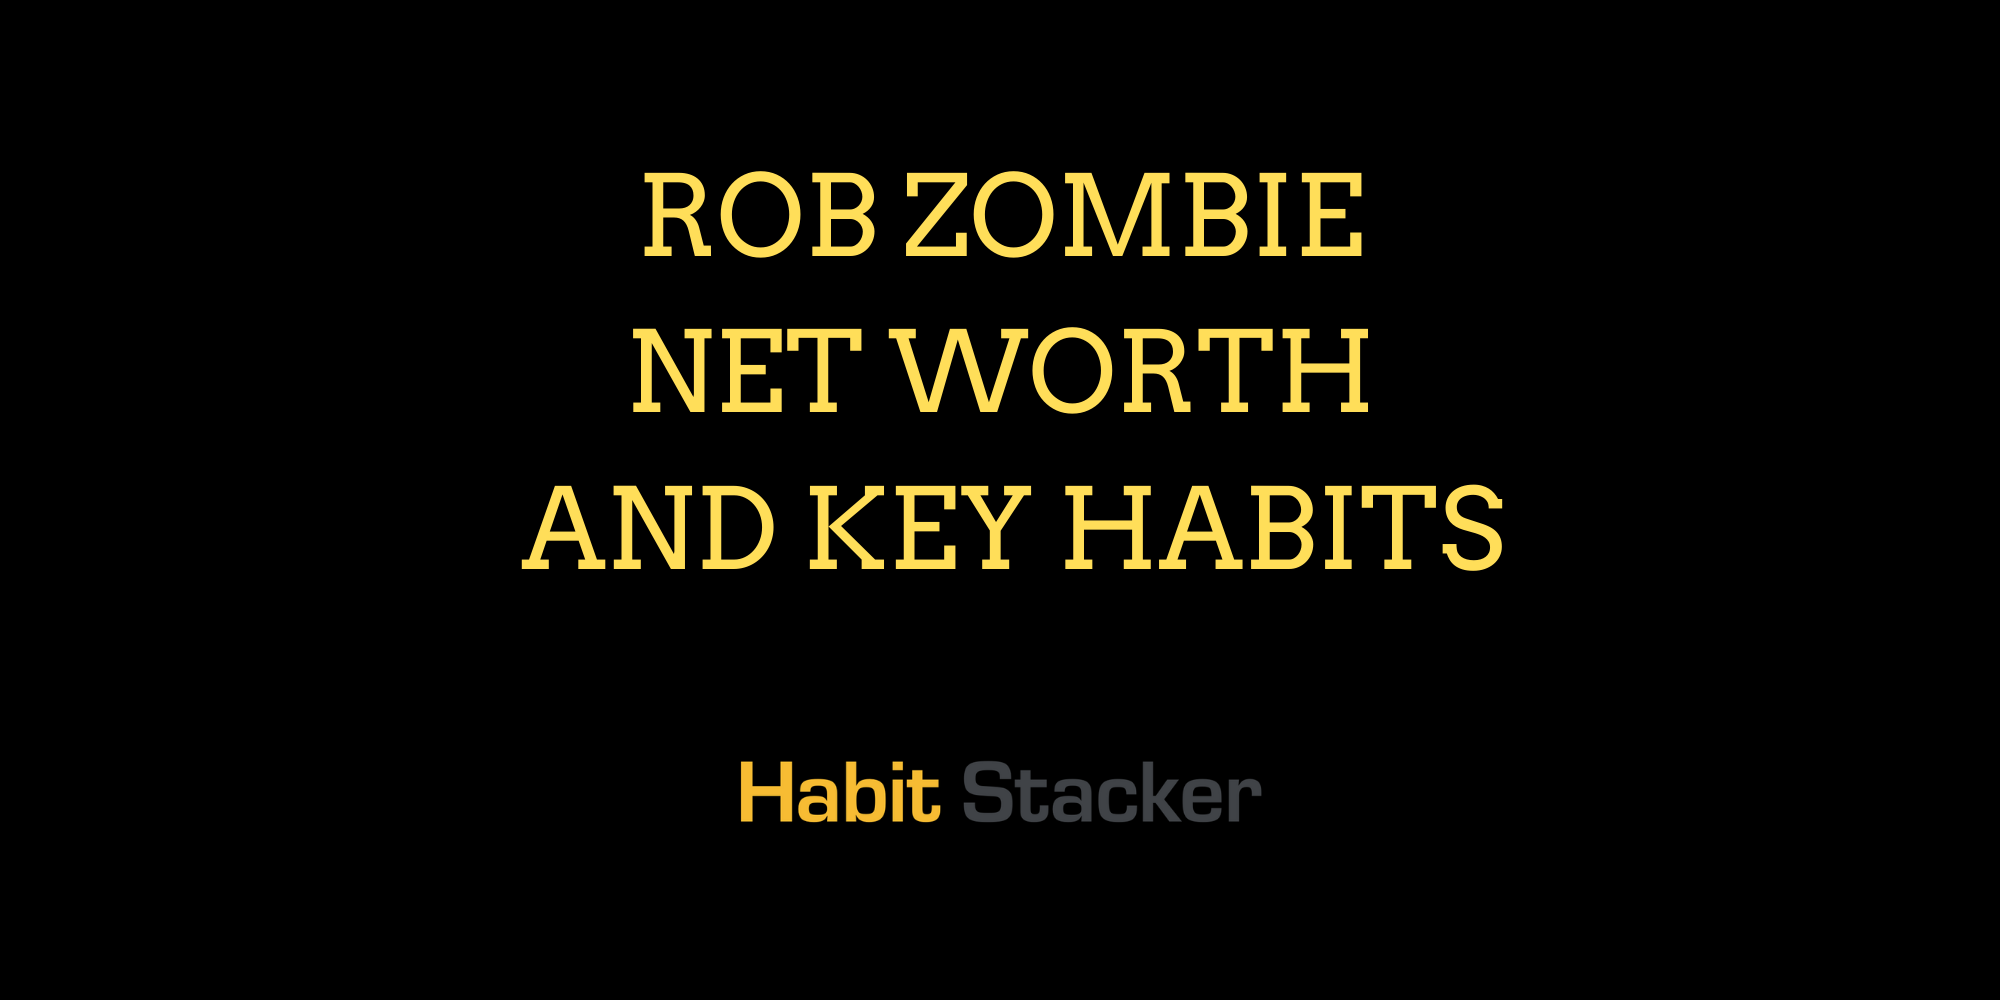 Rob Zombie Net Worth and Key Habits